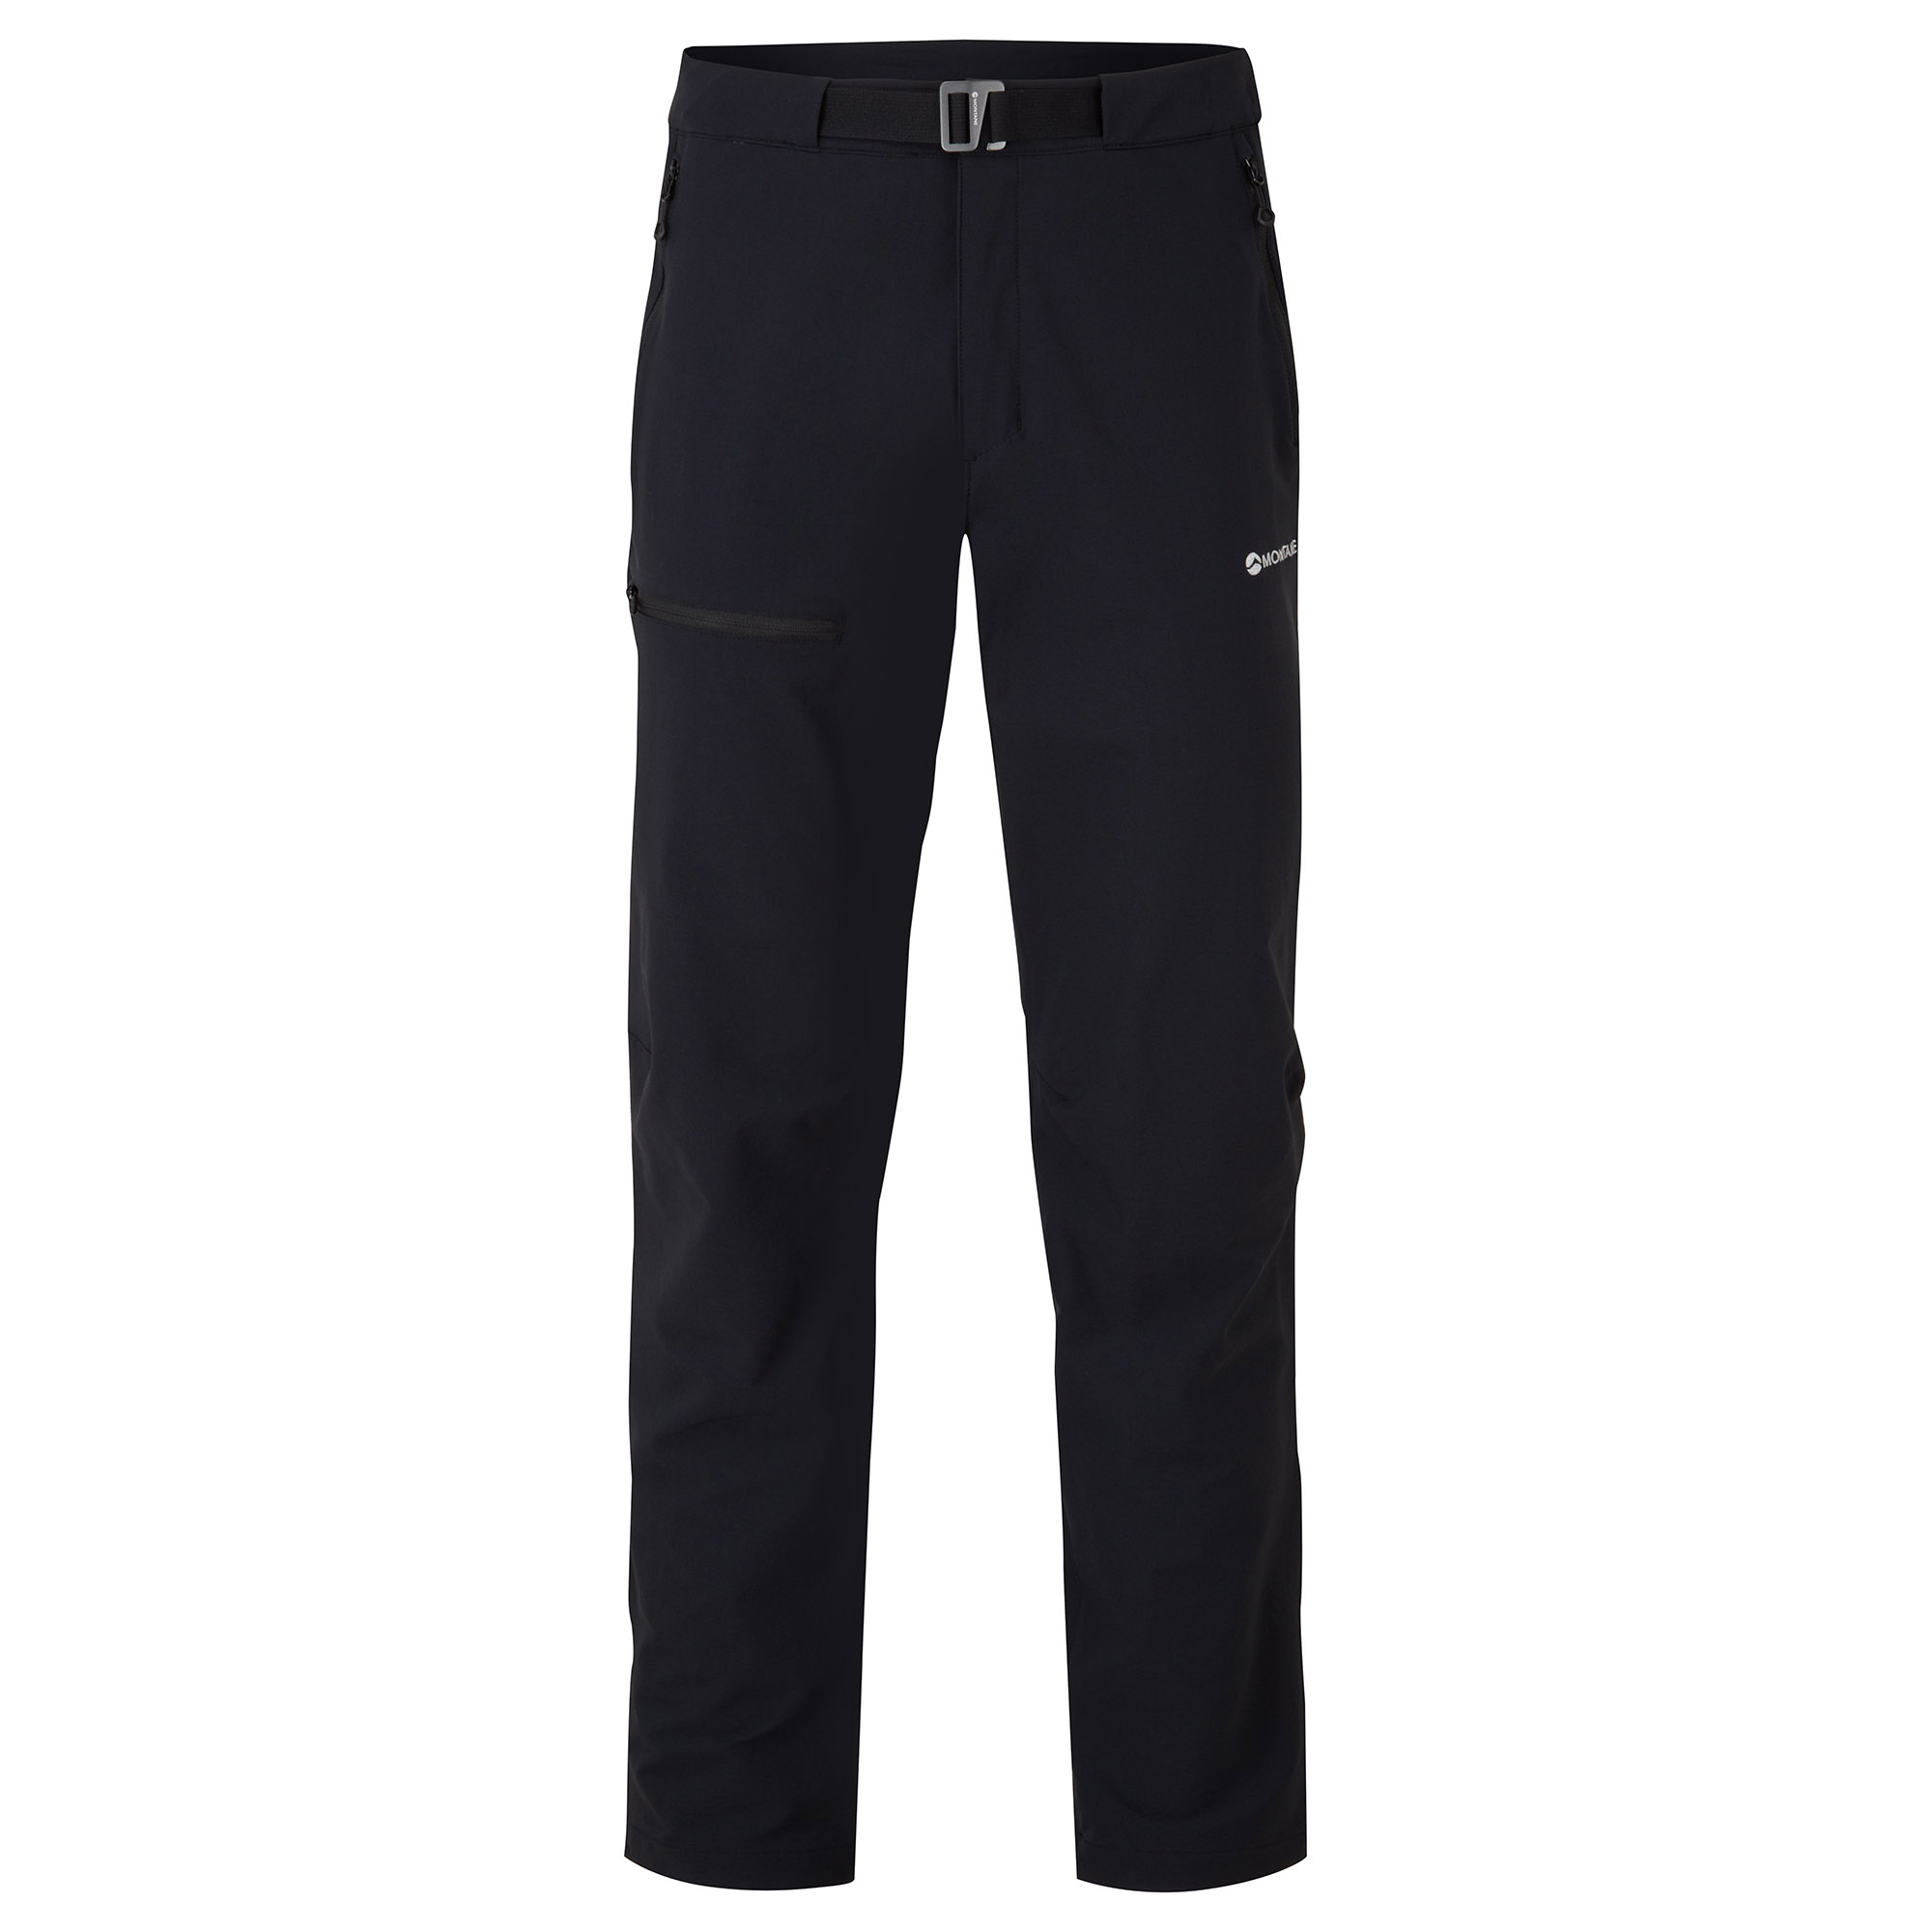 Montane pánské softshellové kalhoty Tenacity Pants - Prodloužené Nohavice Barva: black, Velikost: 30